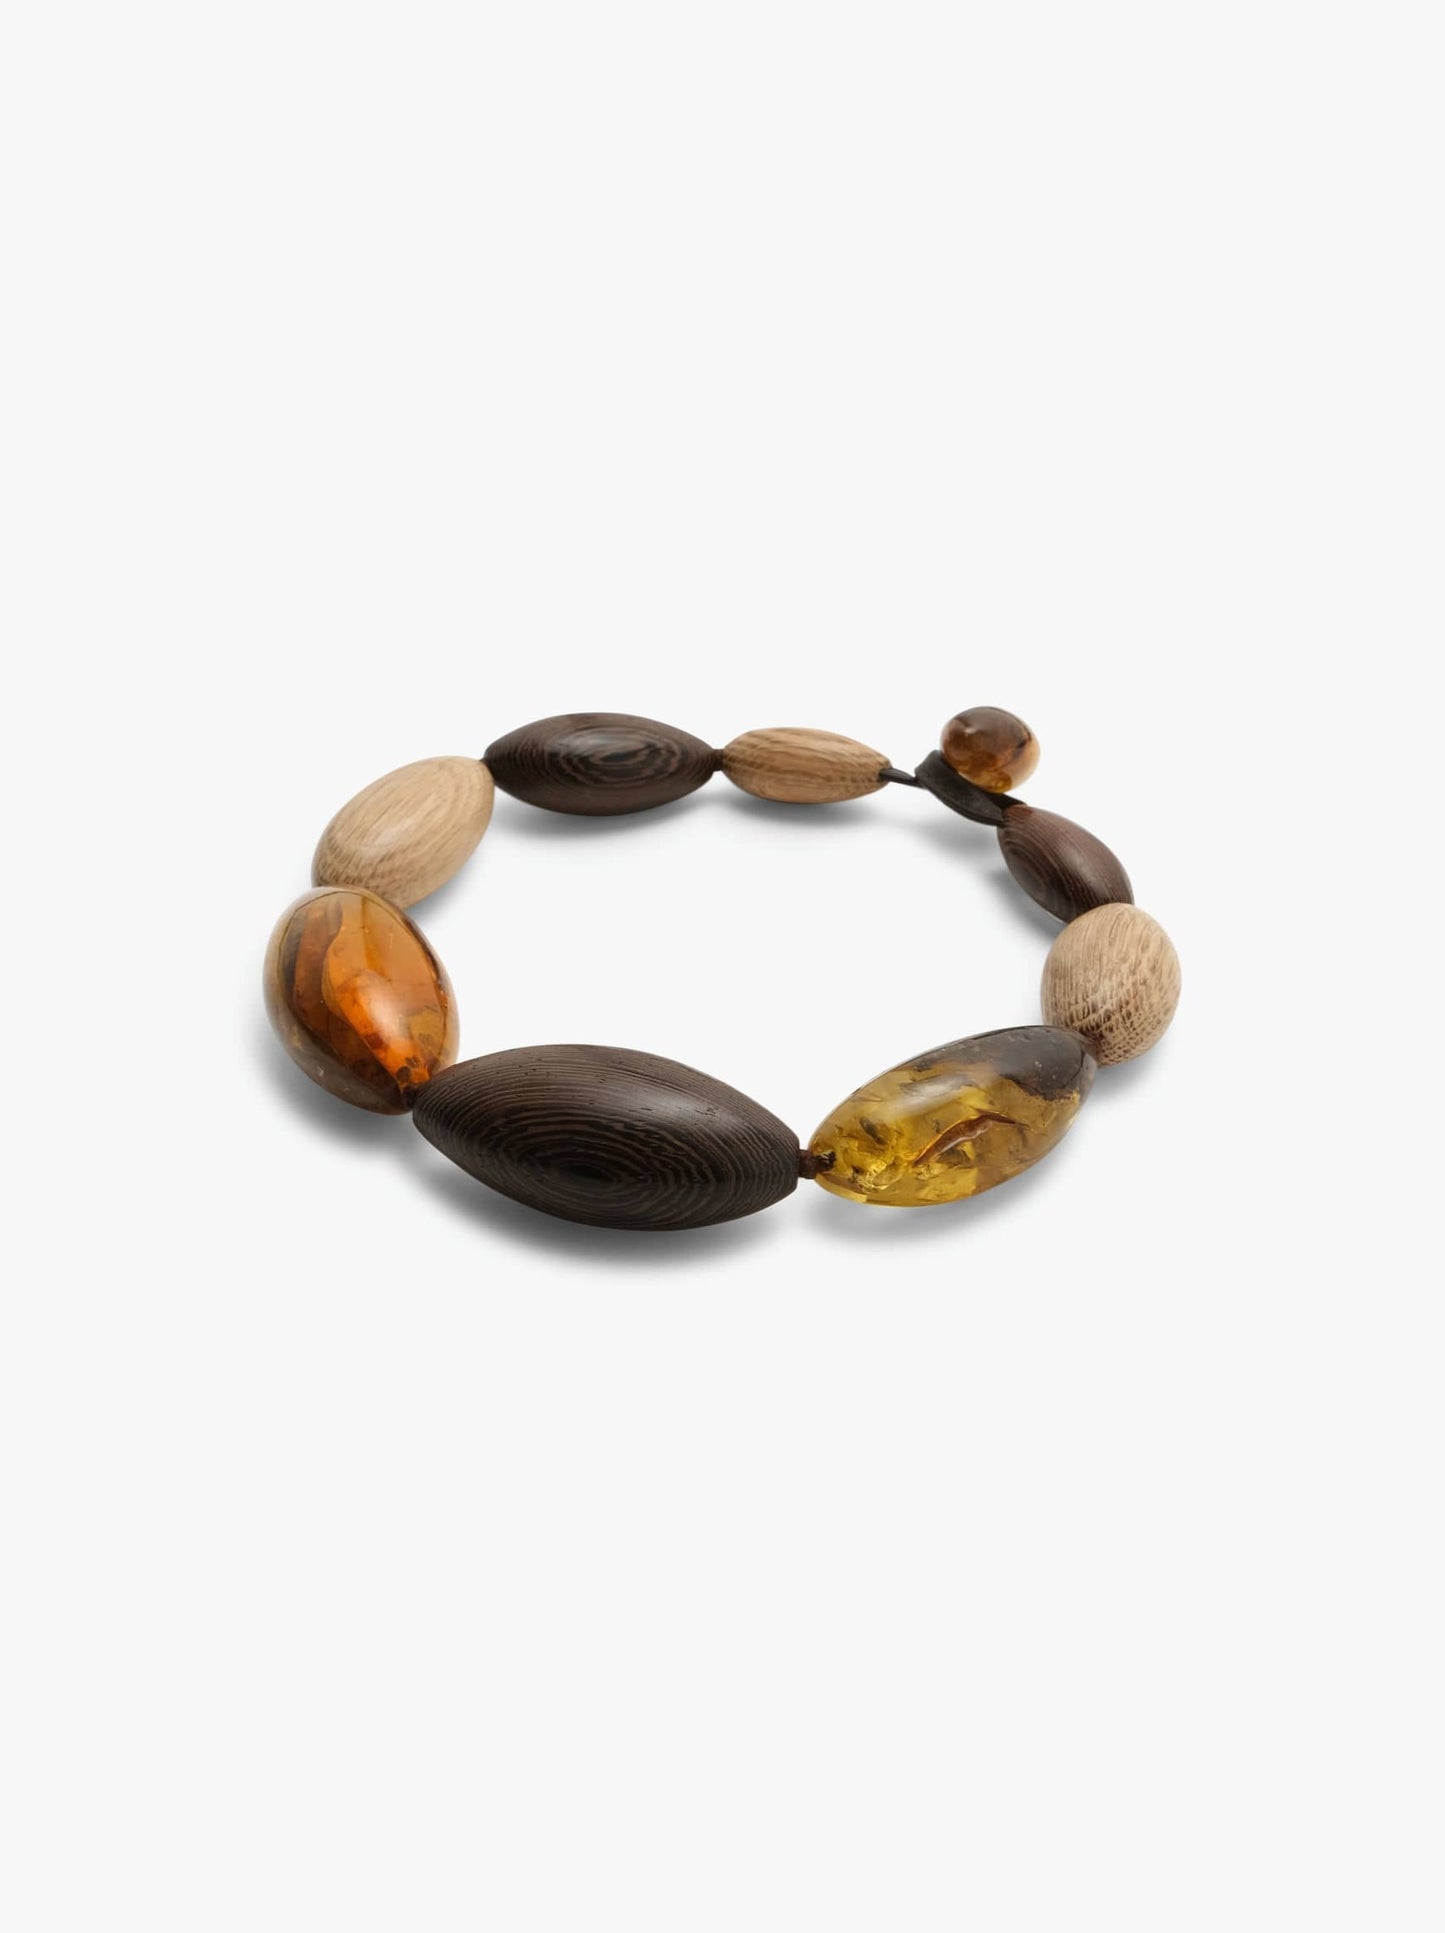 Necklace: amber, oak, wengé wood